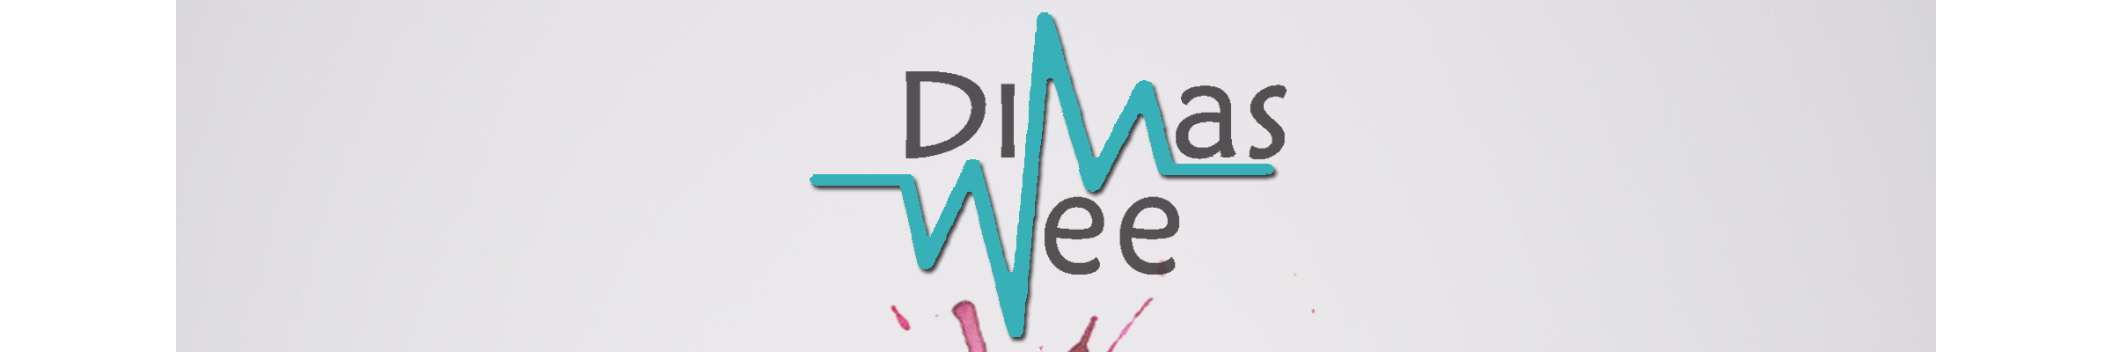 Dimas Wee